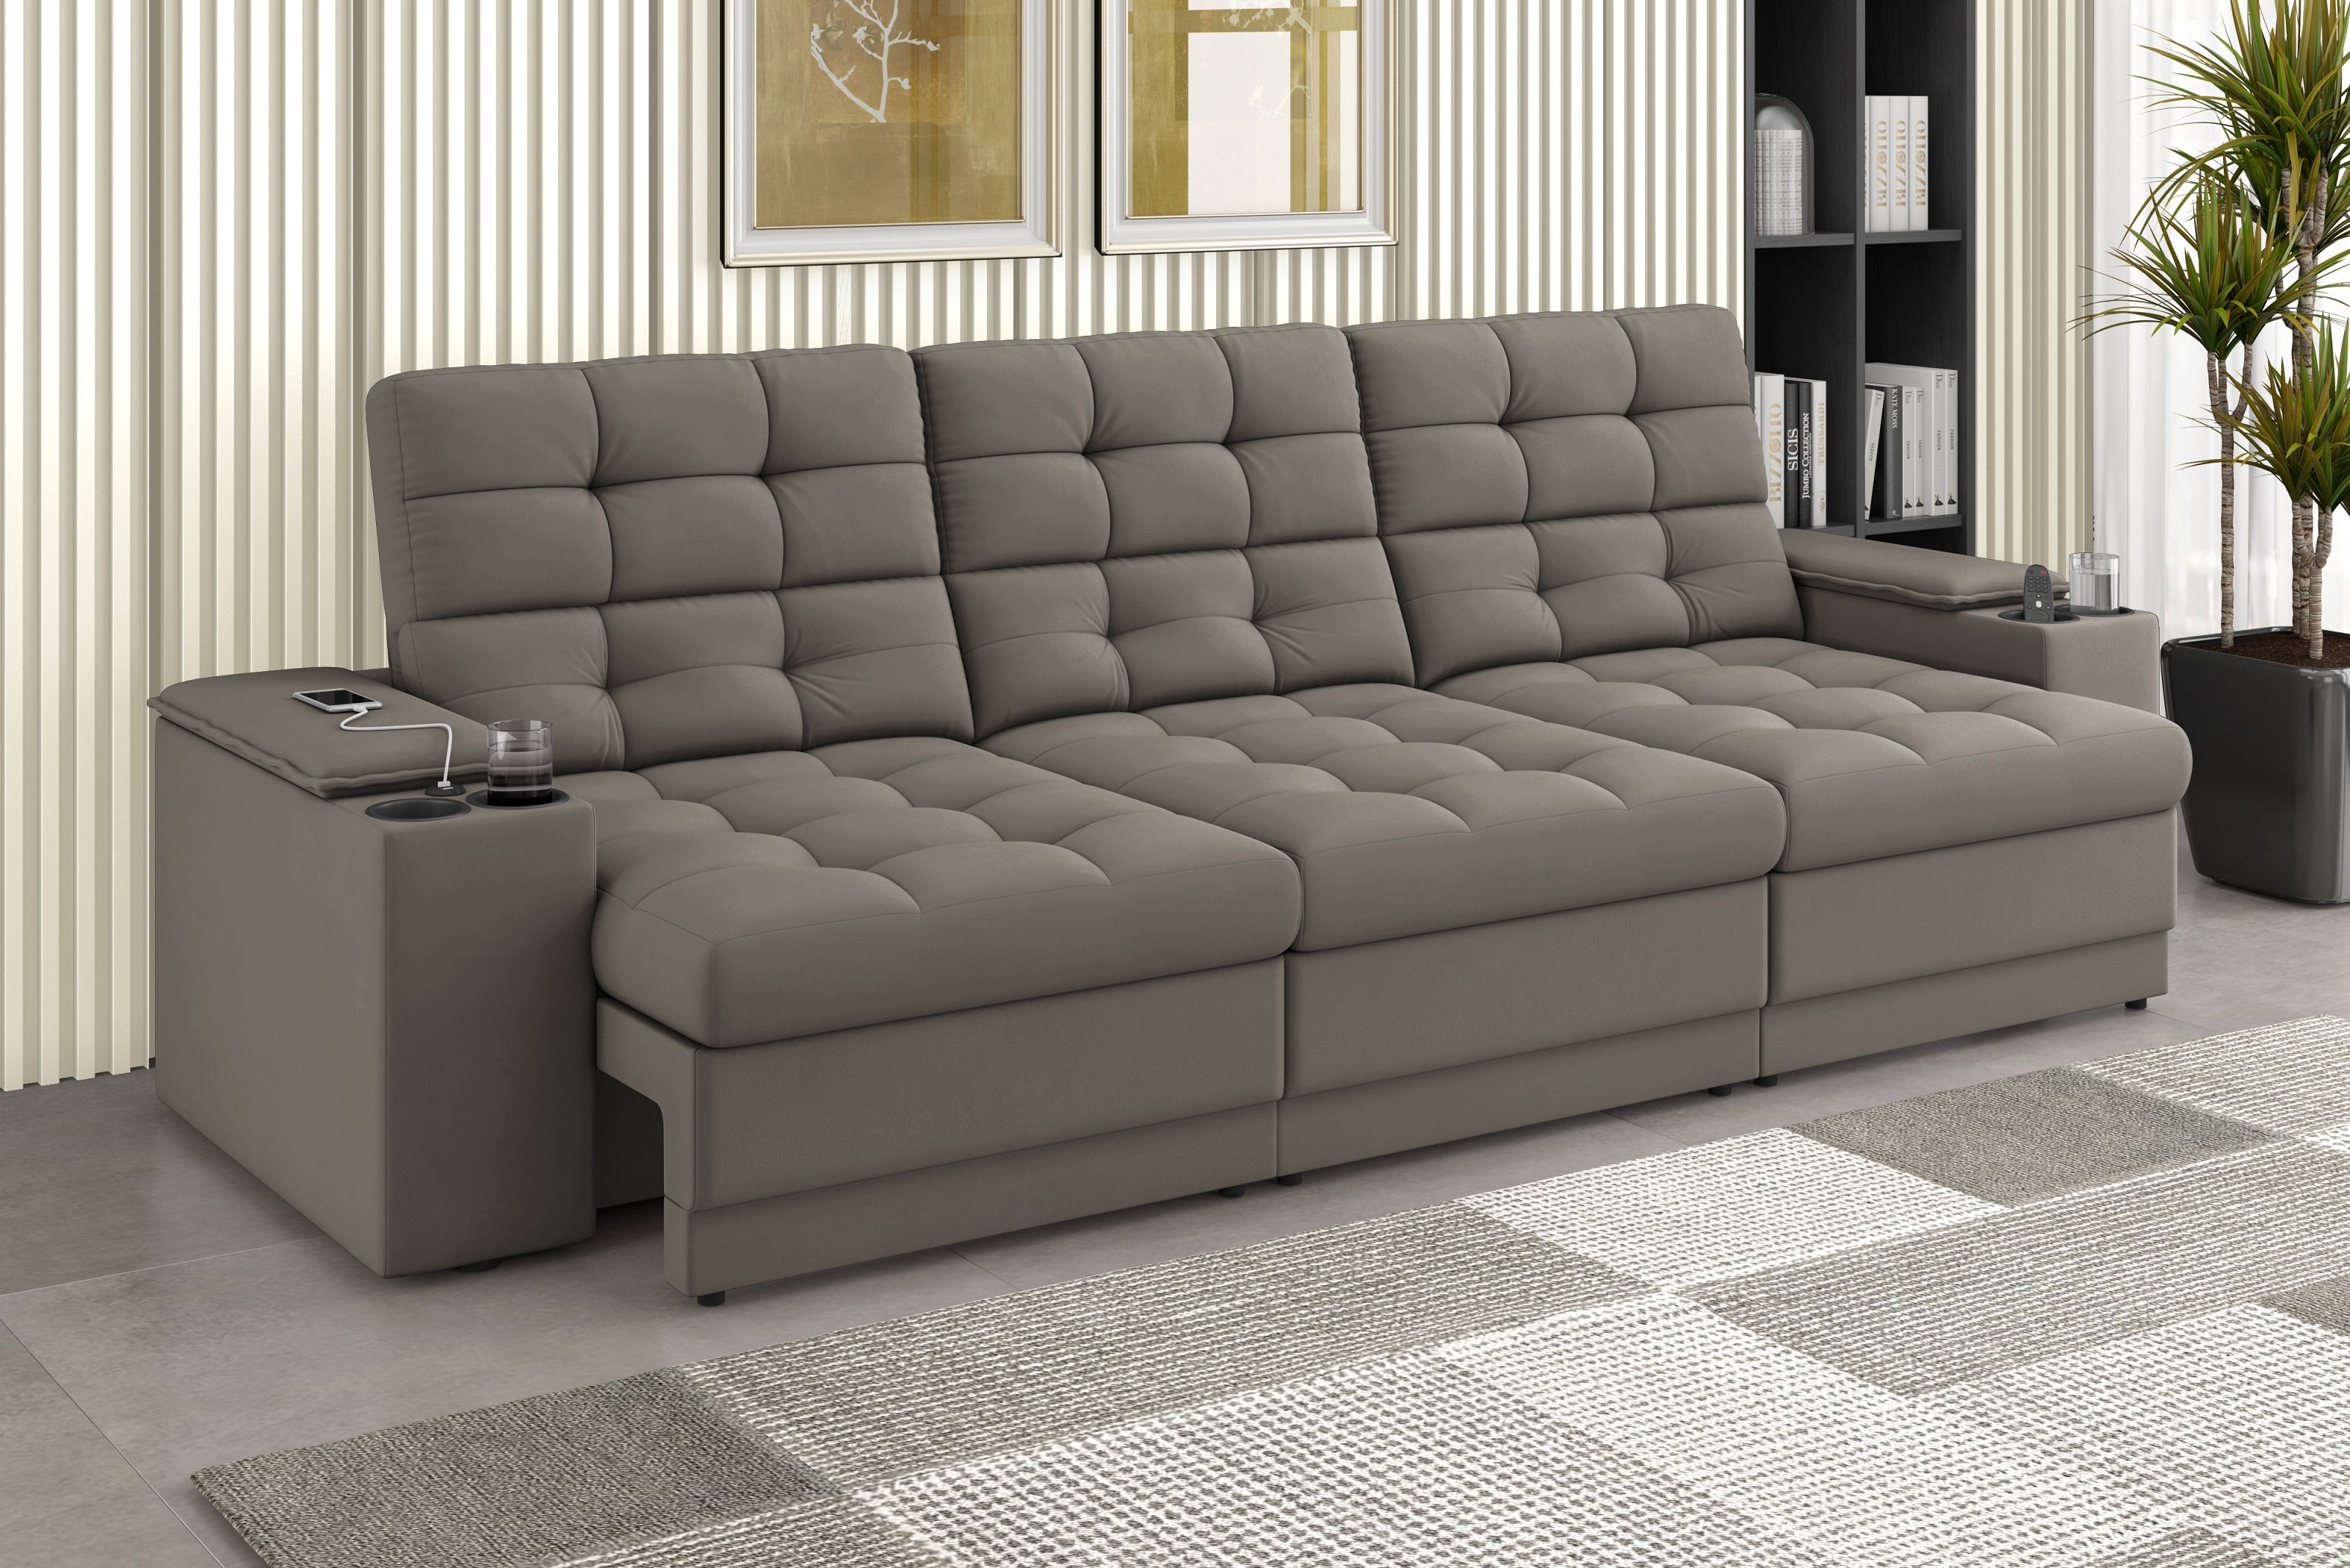 Sofá Confort Premium 2,30m Assento Retrátil/reclinável Porta Copos e Usb Suede Capuccino - Xflex